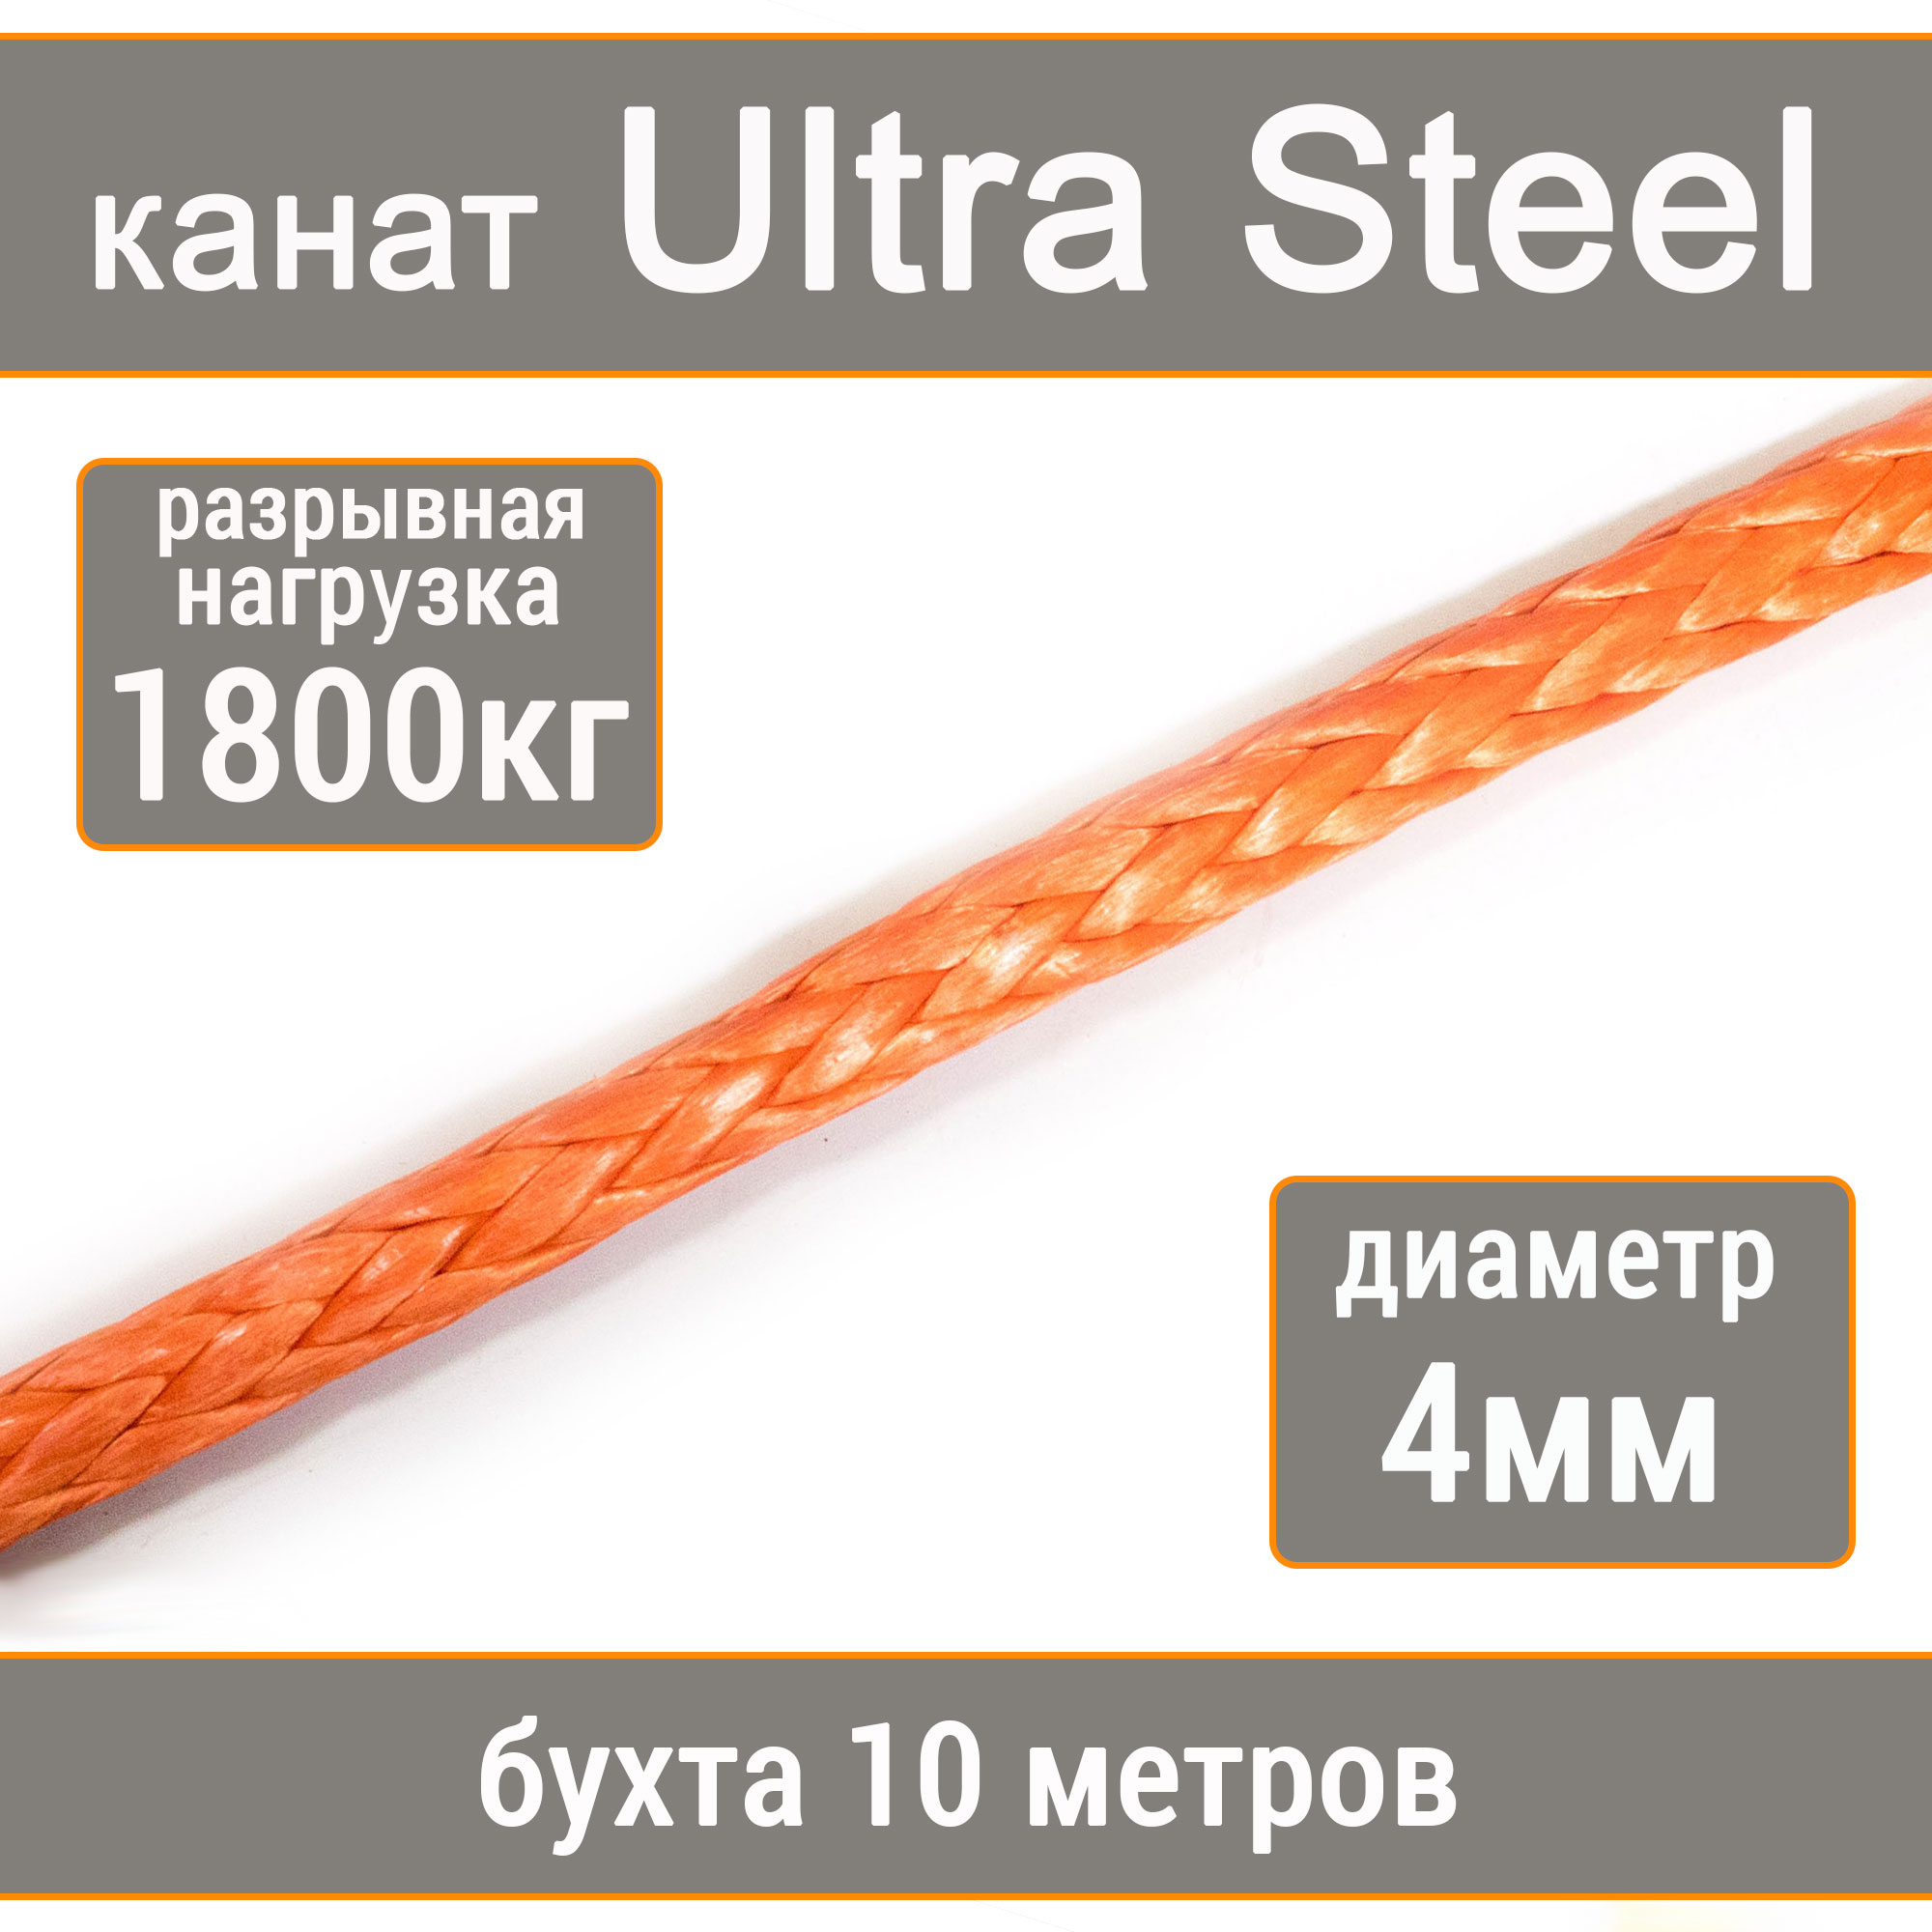 Высокопрочный синтетический канат UTX Ultra Steel 4мм р.н.1800кг, 007654321-104